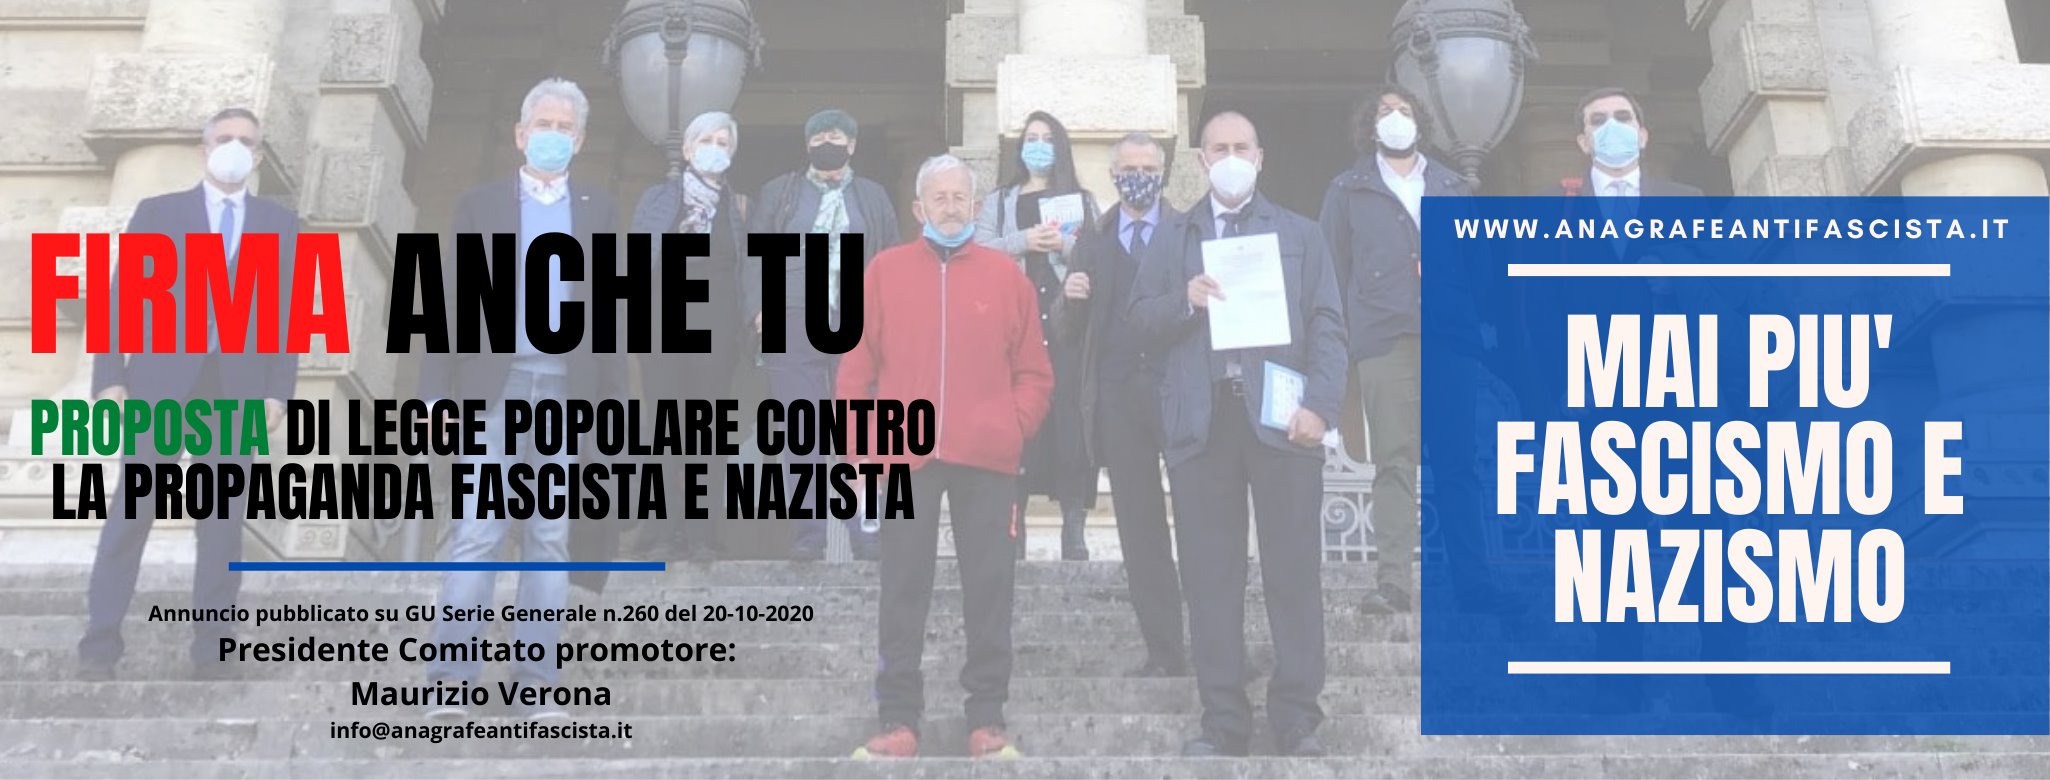 Legge Antifascista Stazzema: "Superato l'obiettivo delle 50mila firme" -  www.controradio.it